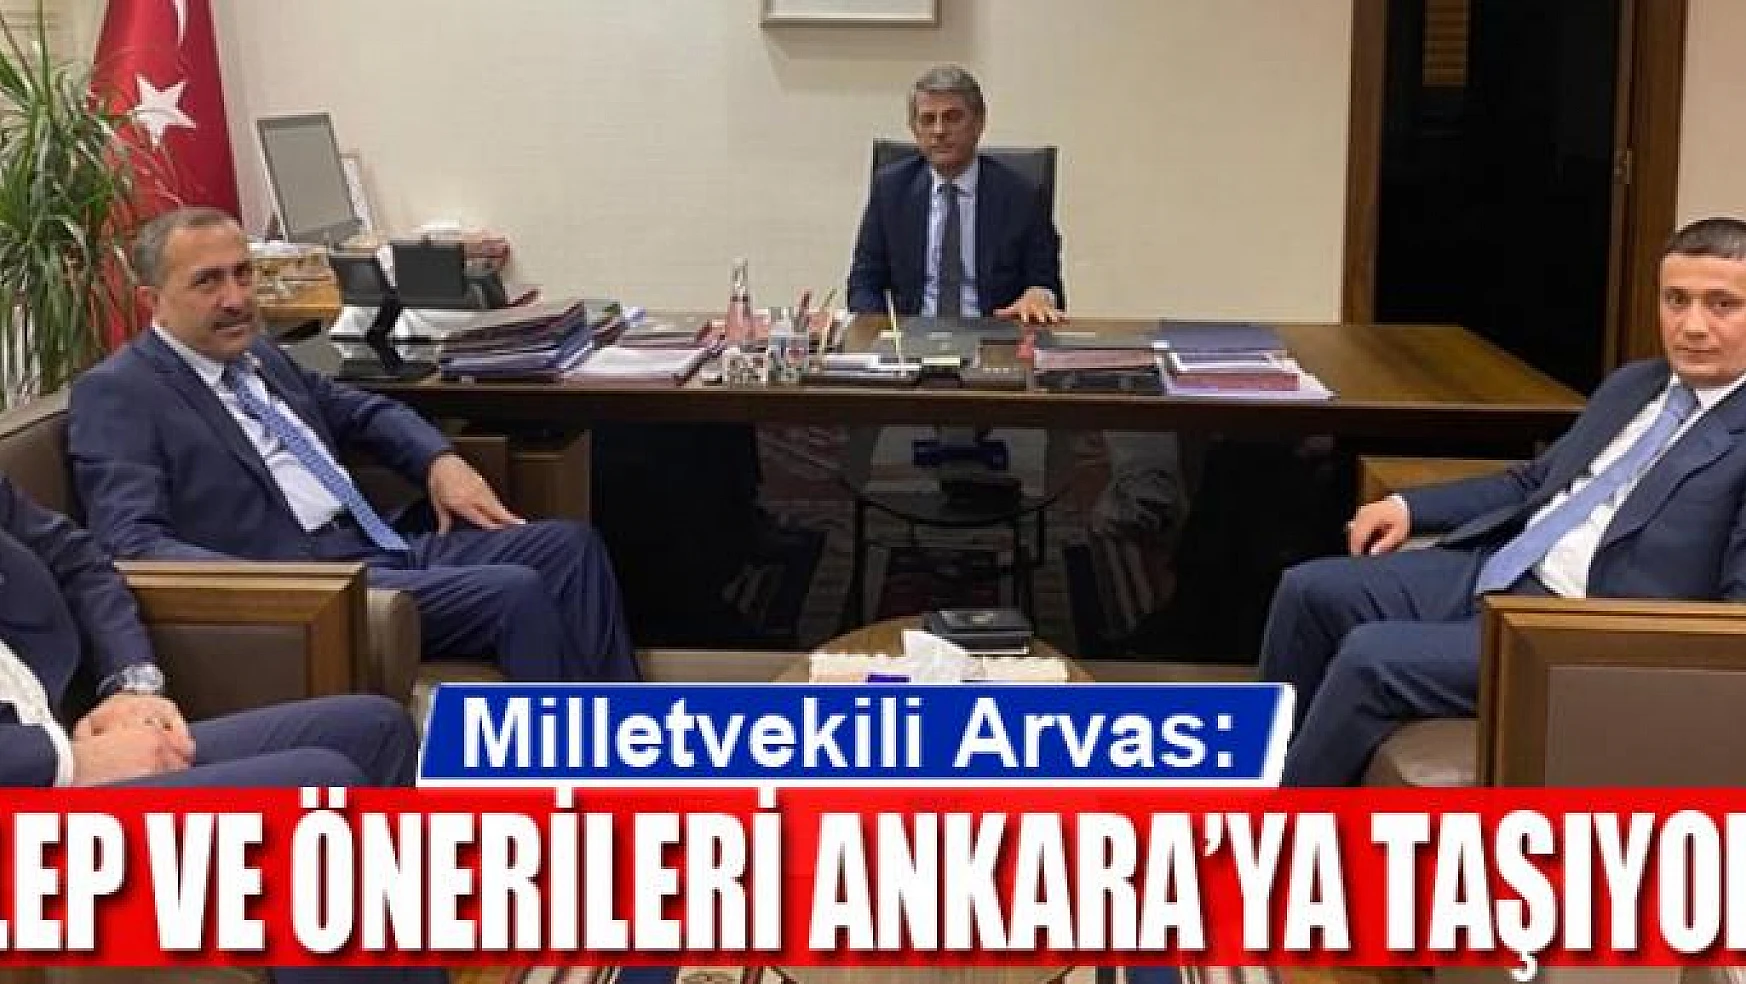 Arvas, 'Talep ve önerileri Ankara'ya taşıyoruz'